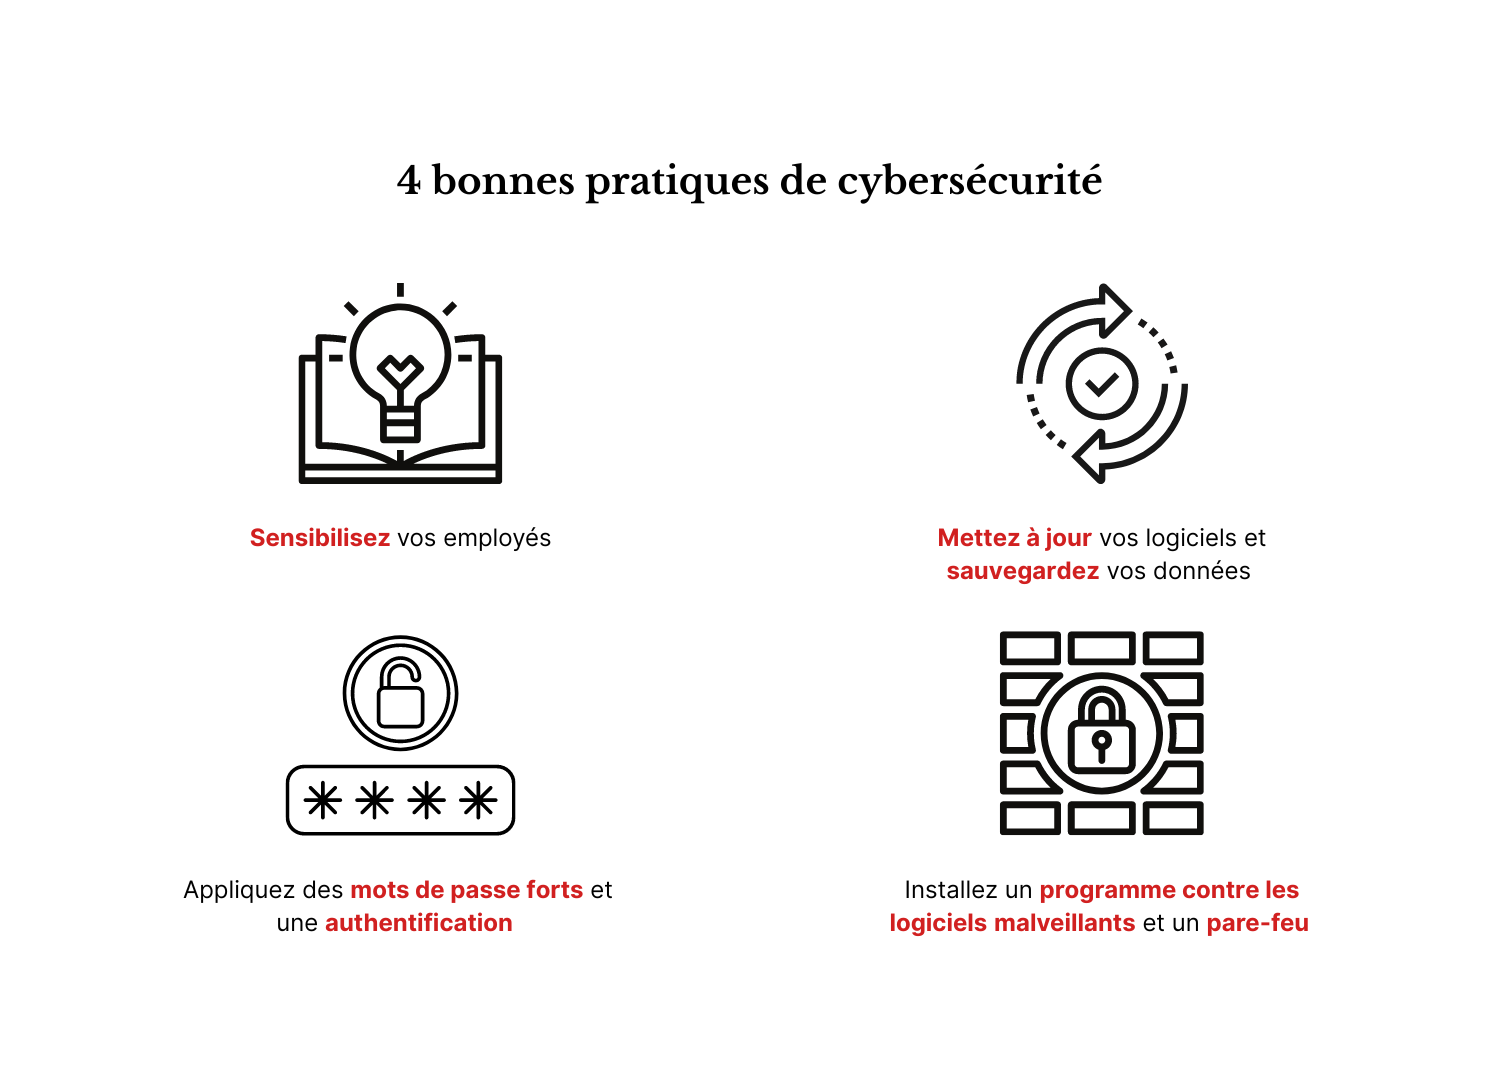 Une infographie présentant 4 bonnes pratiques en matière de cybersécurité.